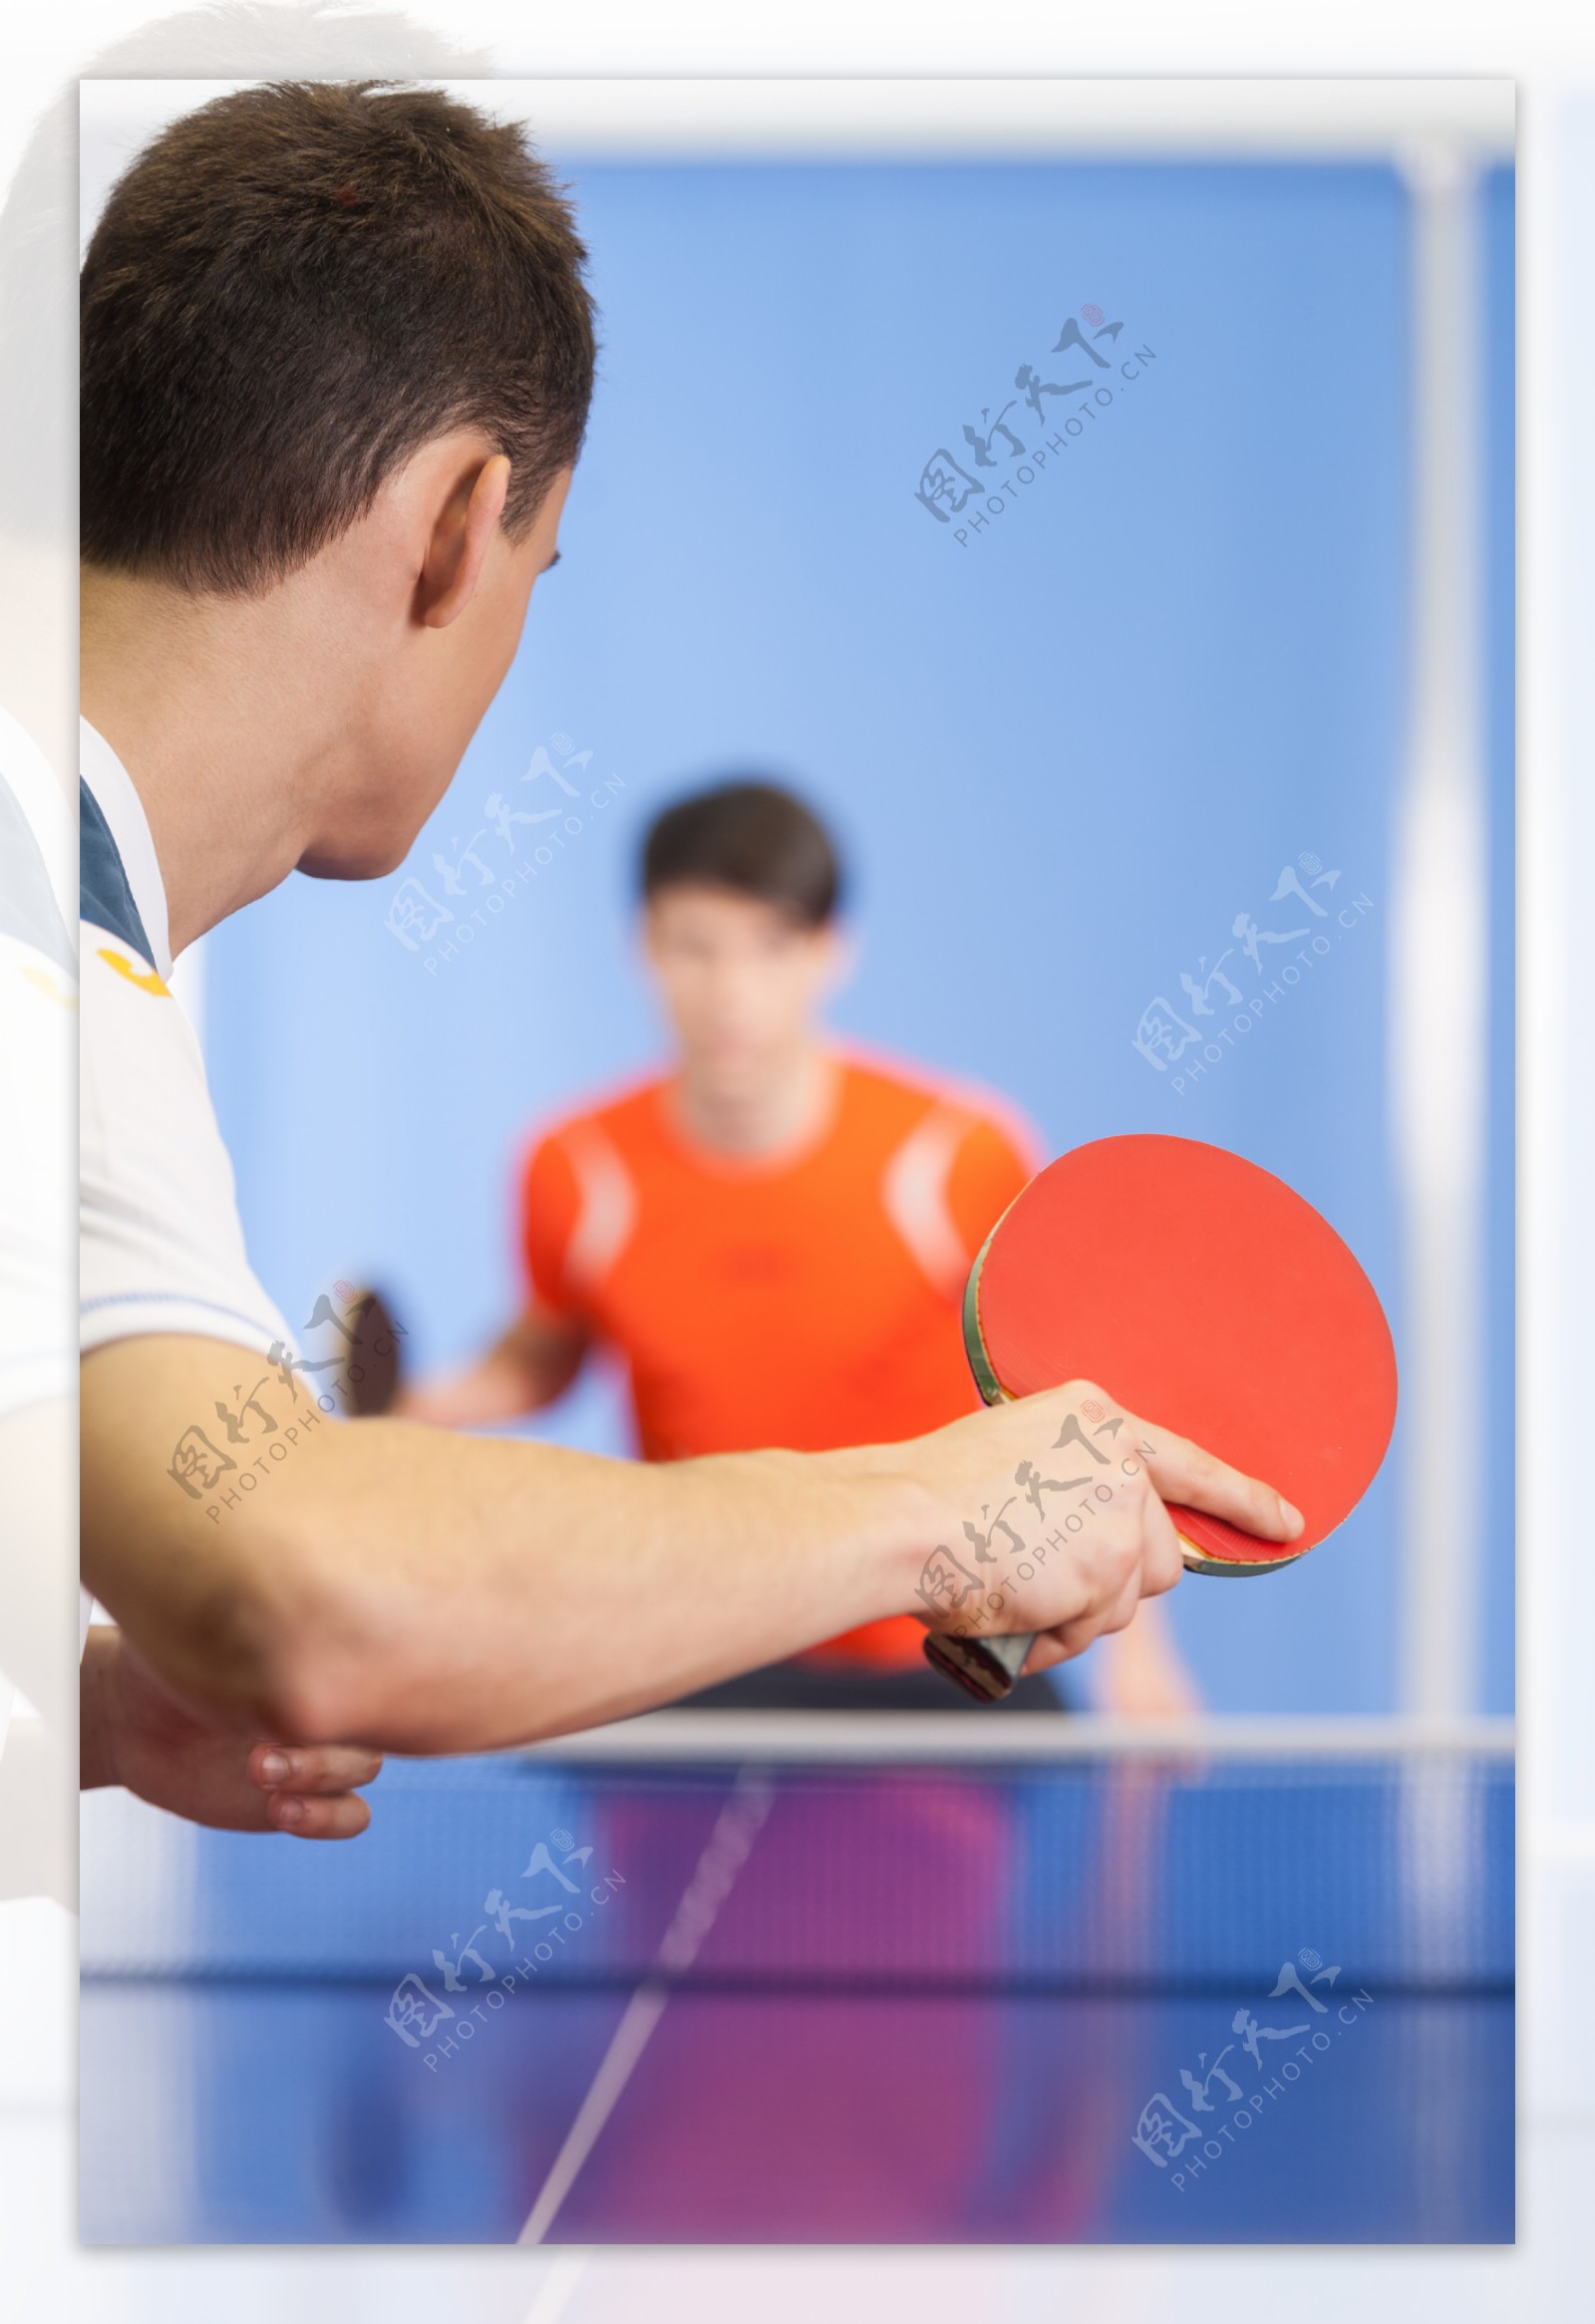 挥动乒乓球拍的手臂特写图片